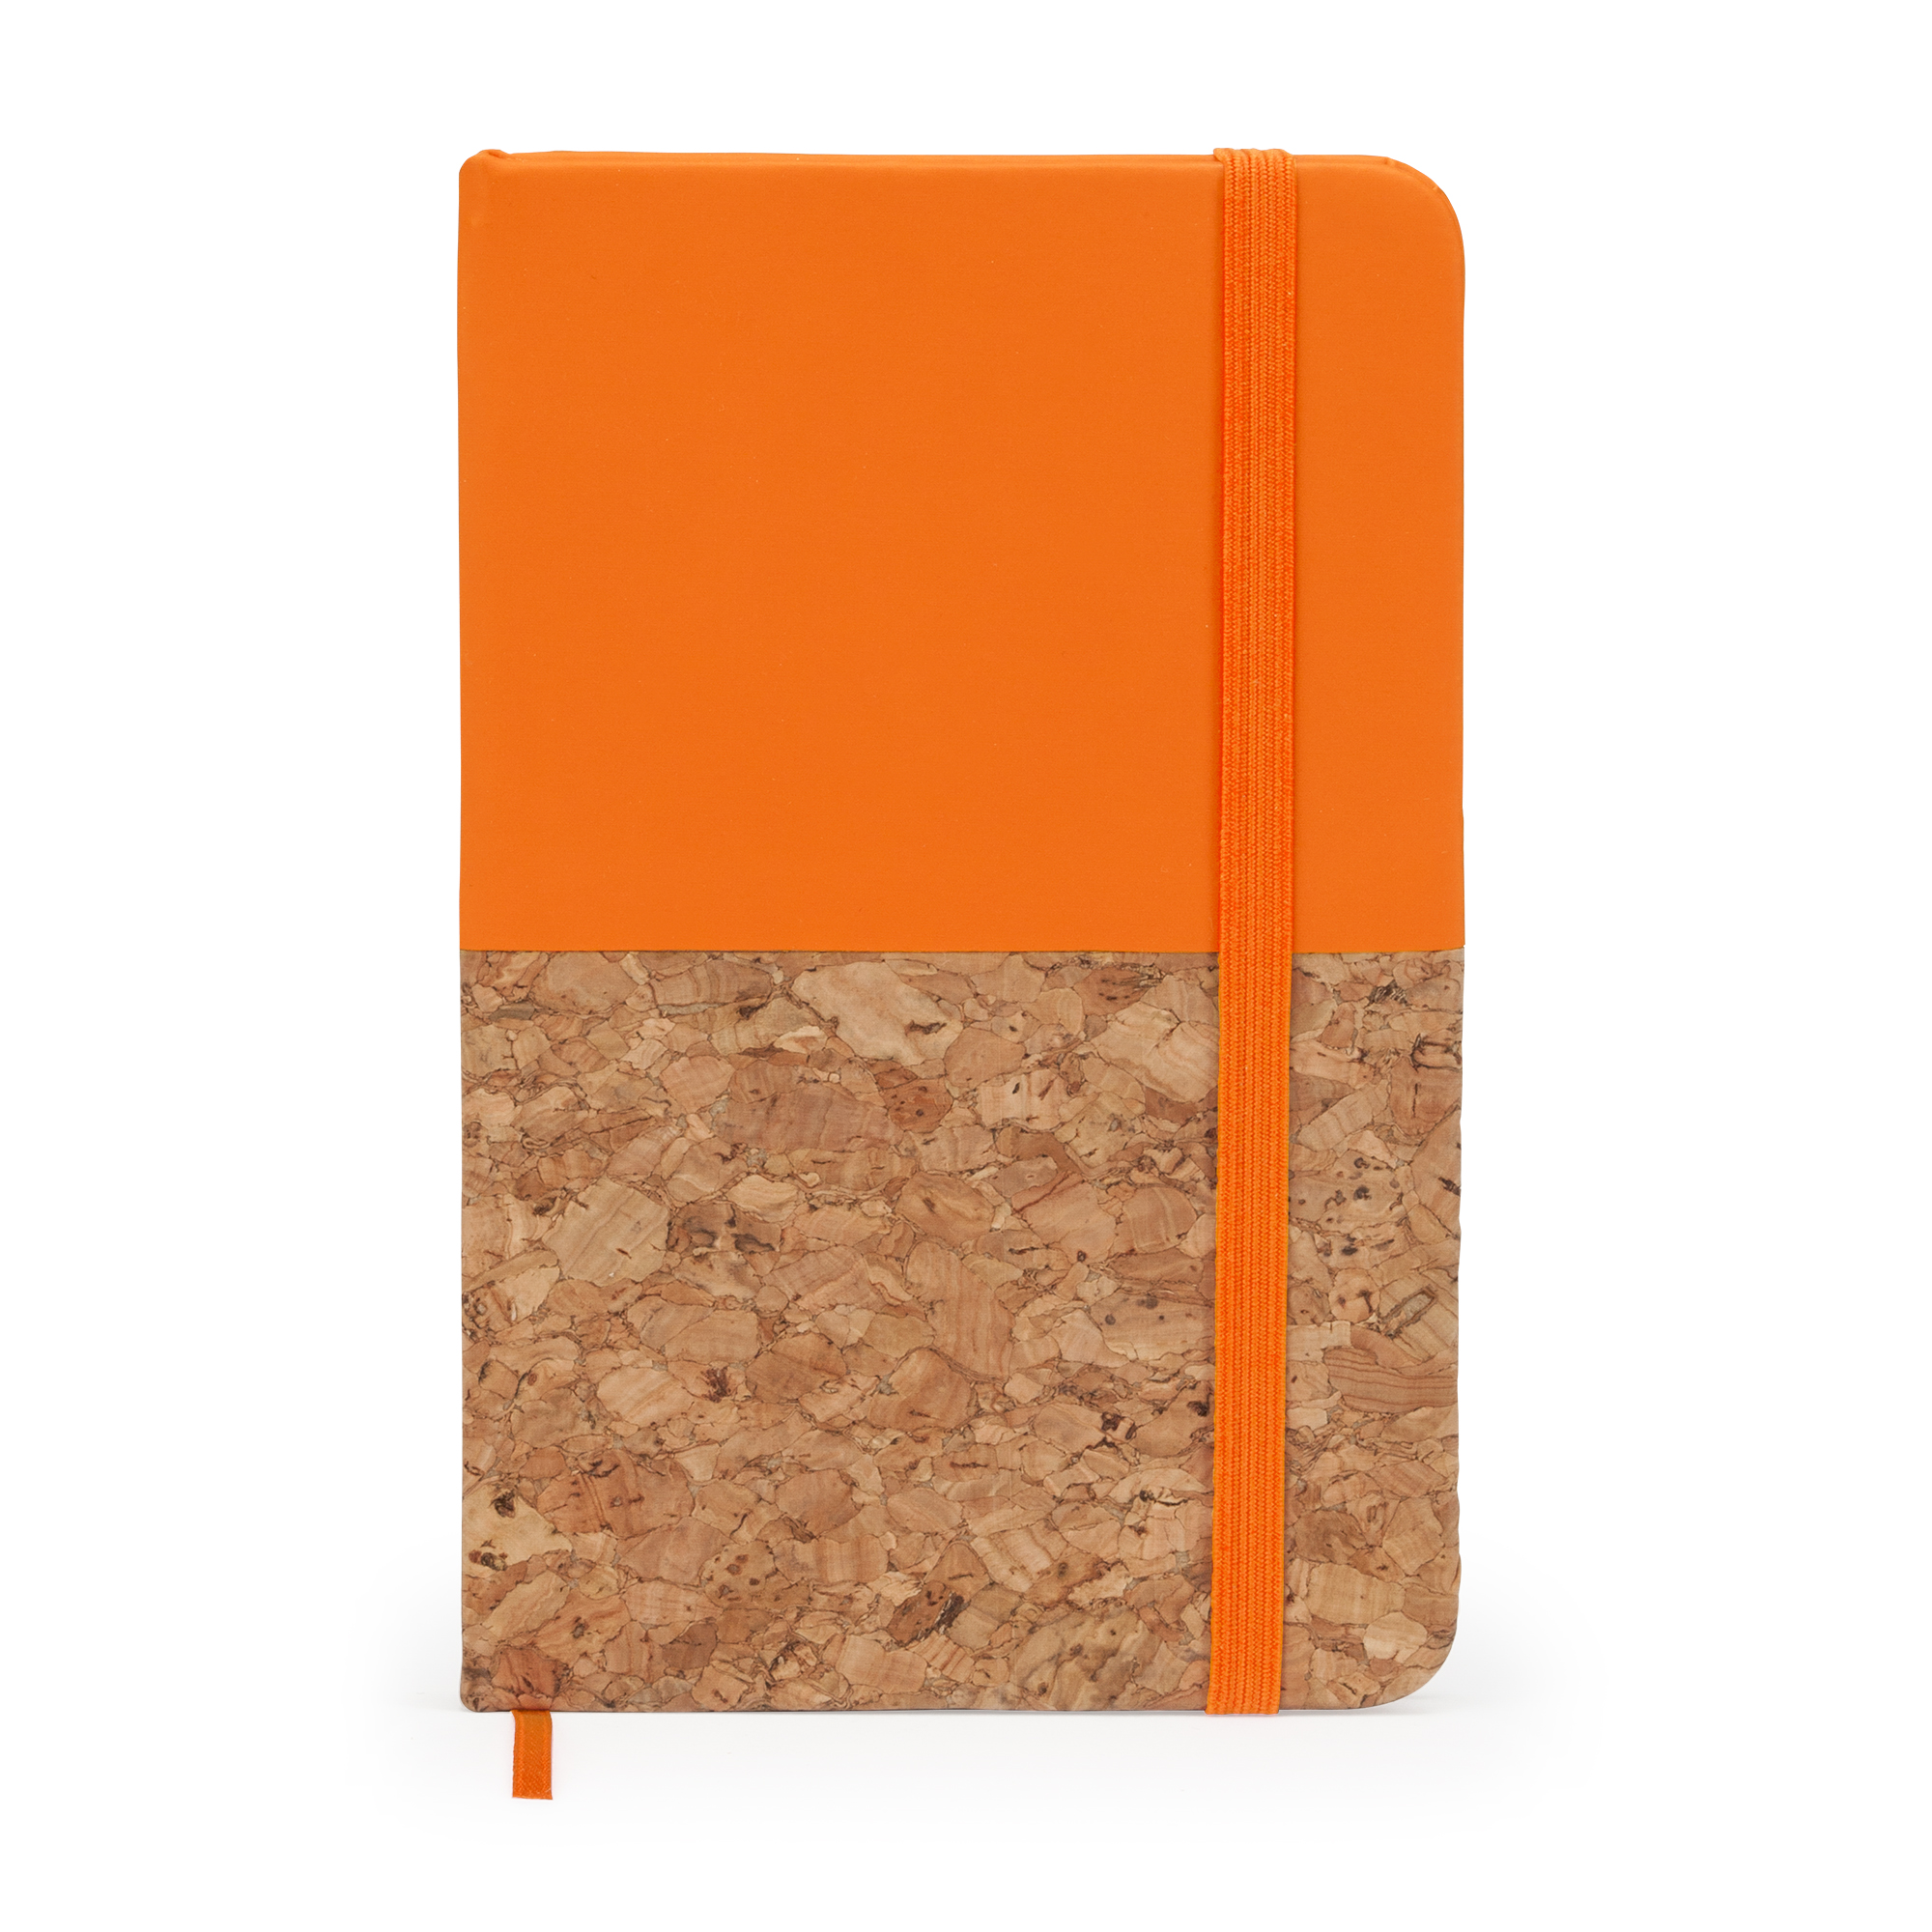 2092-porto-blocco-note-formato-a6-con-copertina-rigida-in-cartone-riciclato-arancio.jpg